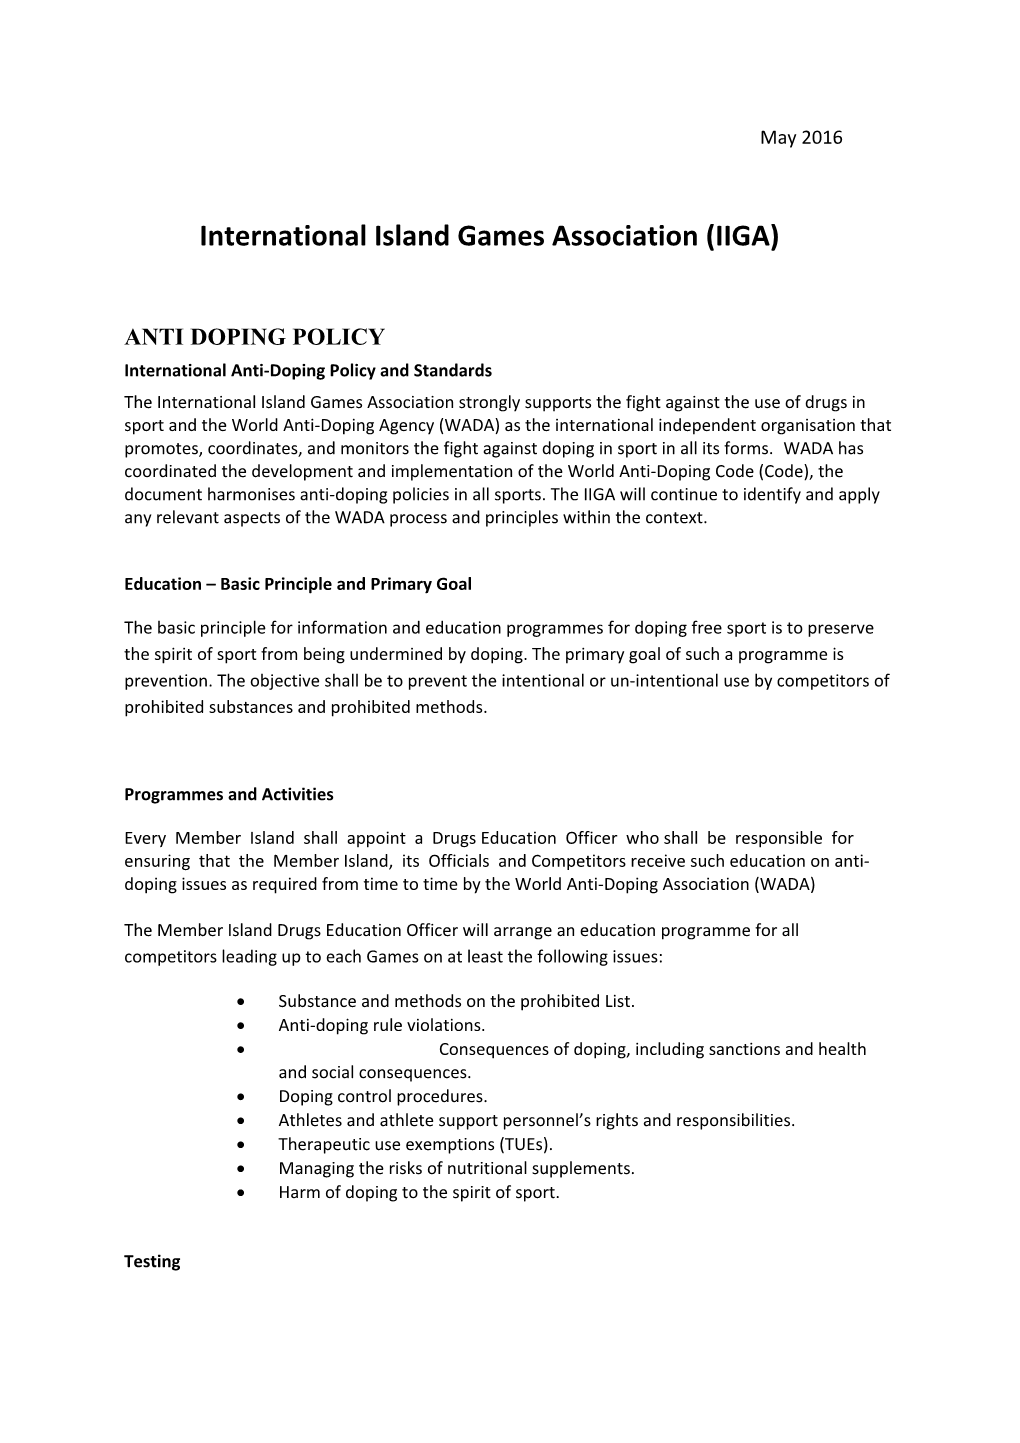 International Island Games Association (IIGA)